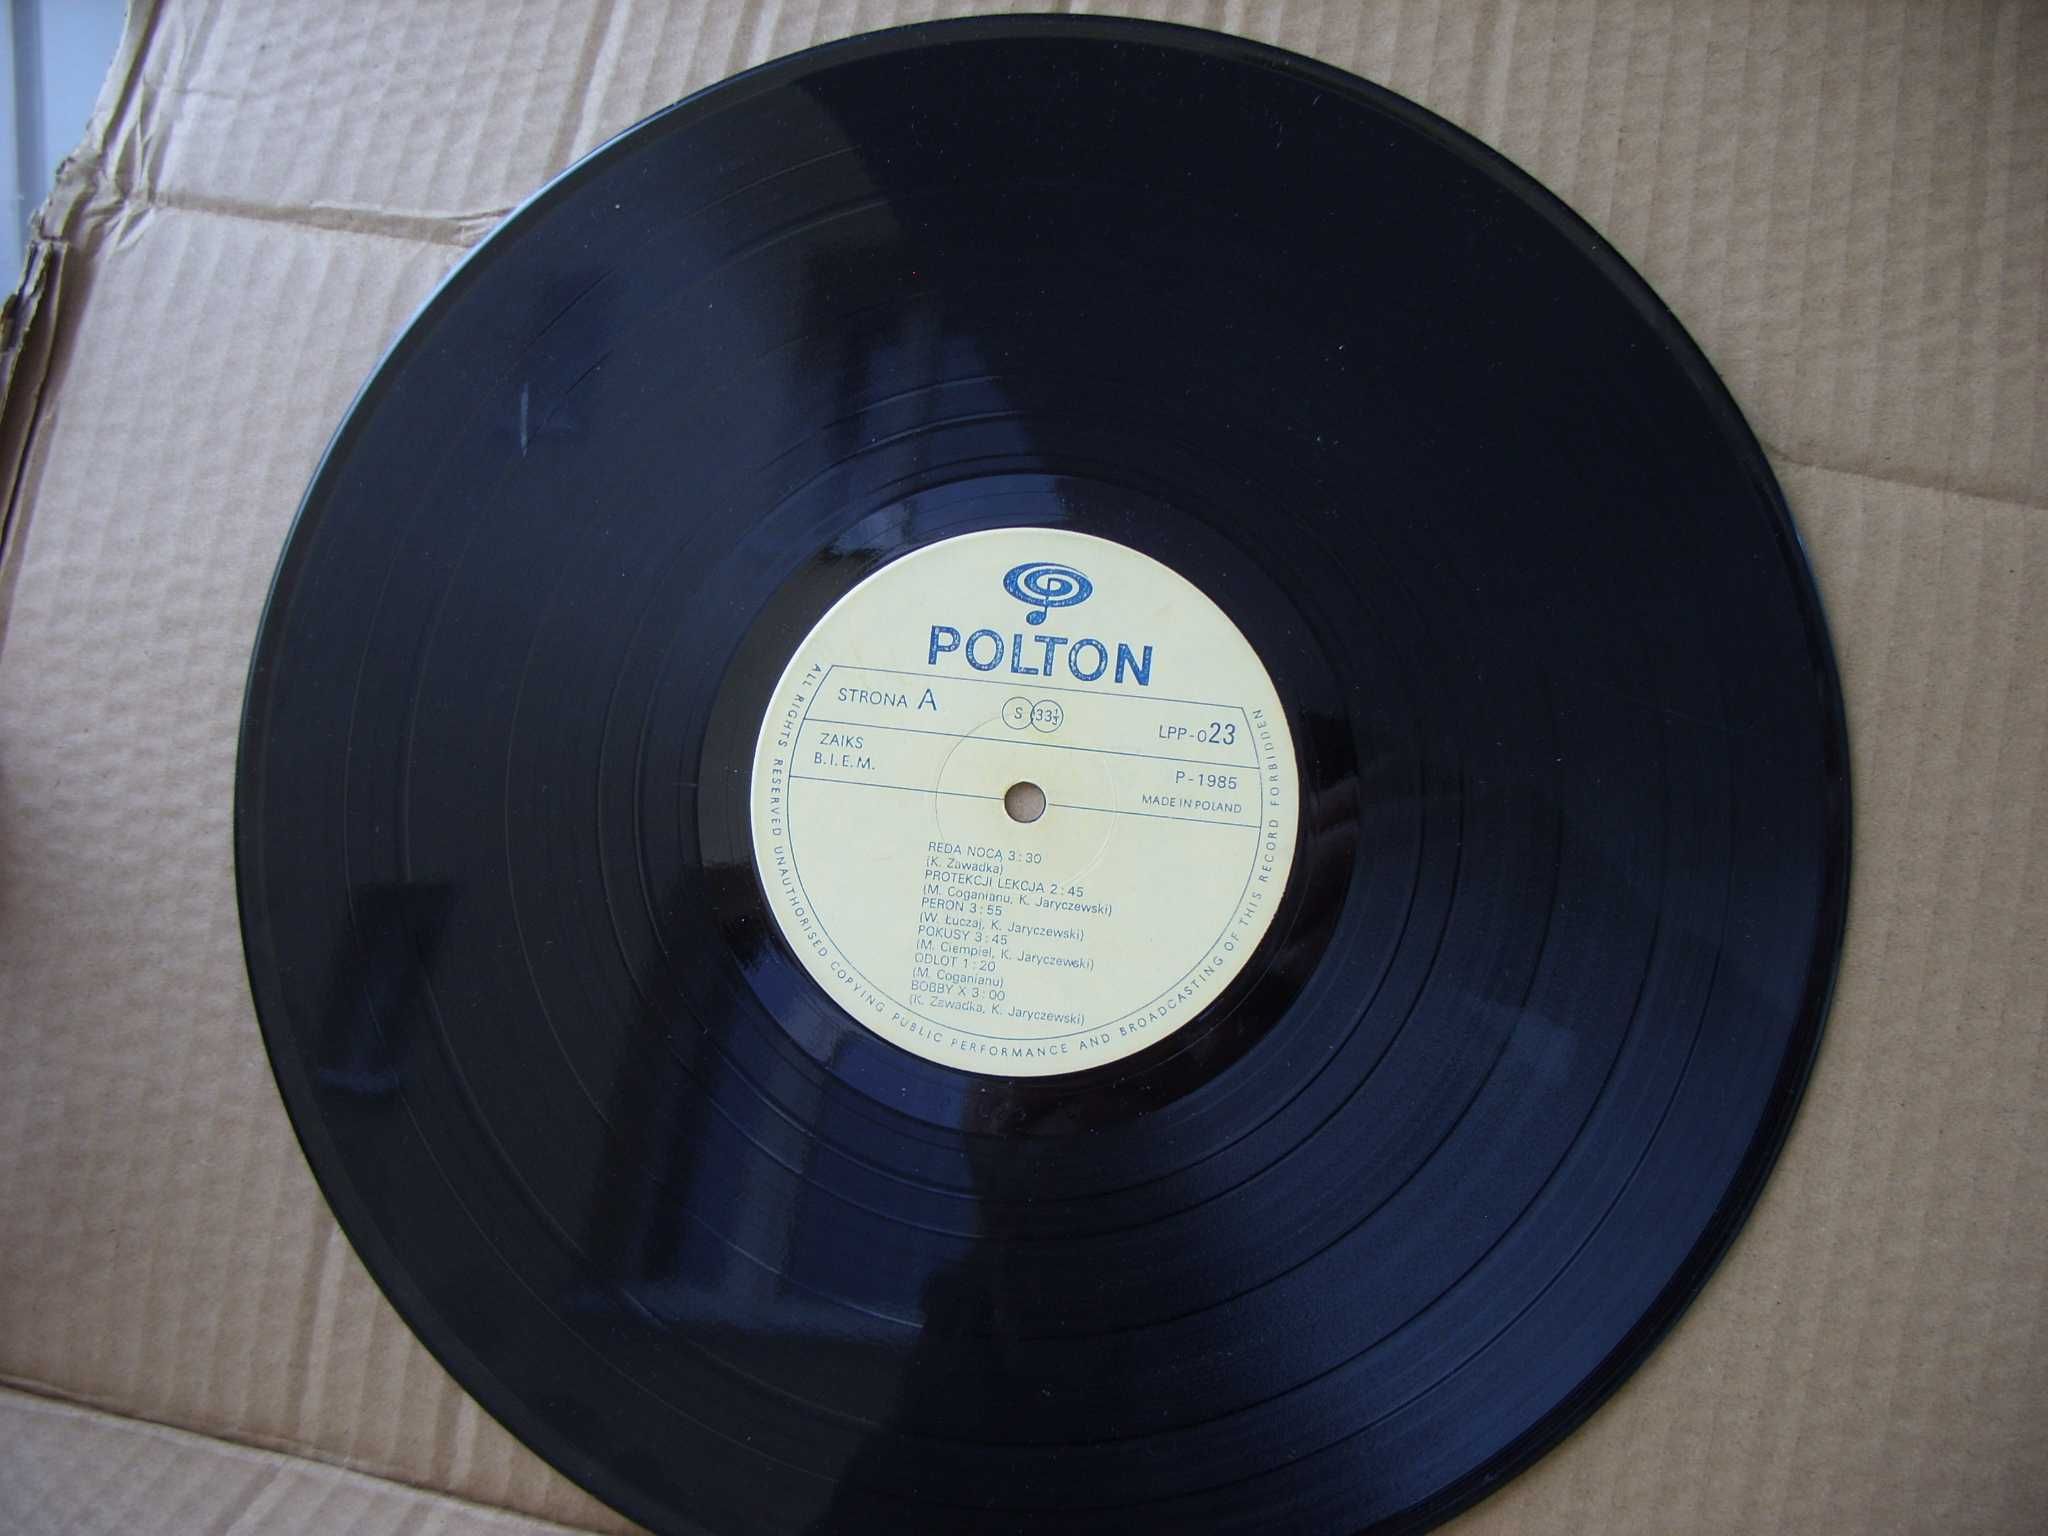 8 .LP; Reda noca; Polton LPP -023. , 1985 rok.